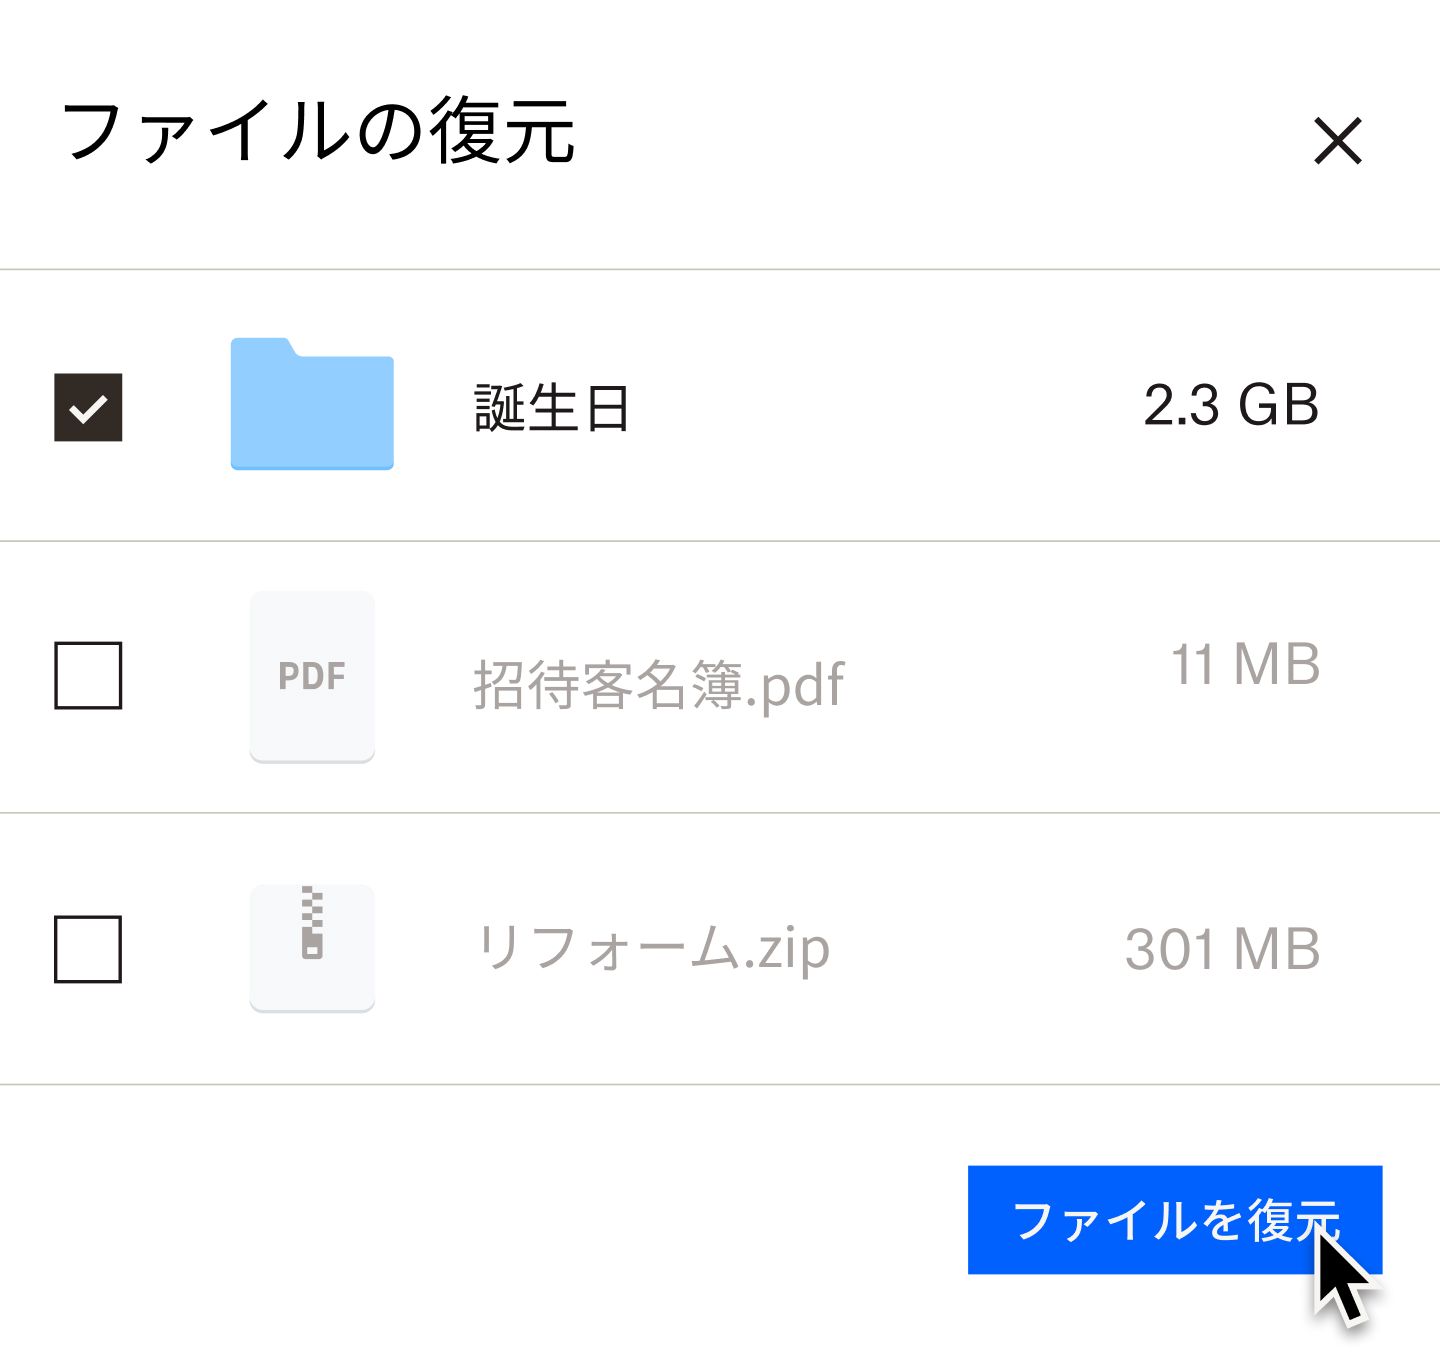 「ファイルを復元」という青いボタンをクリックしているユーザー